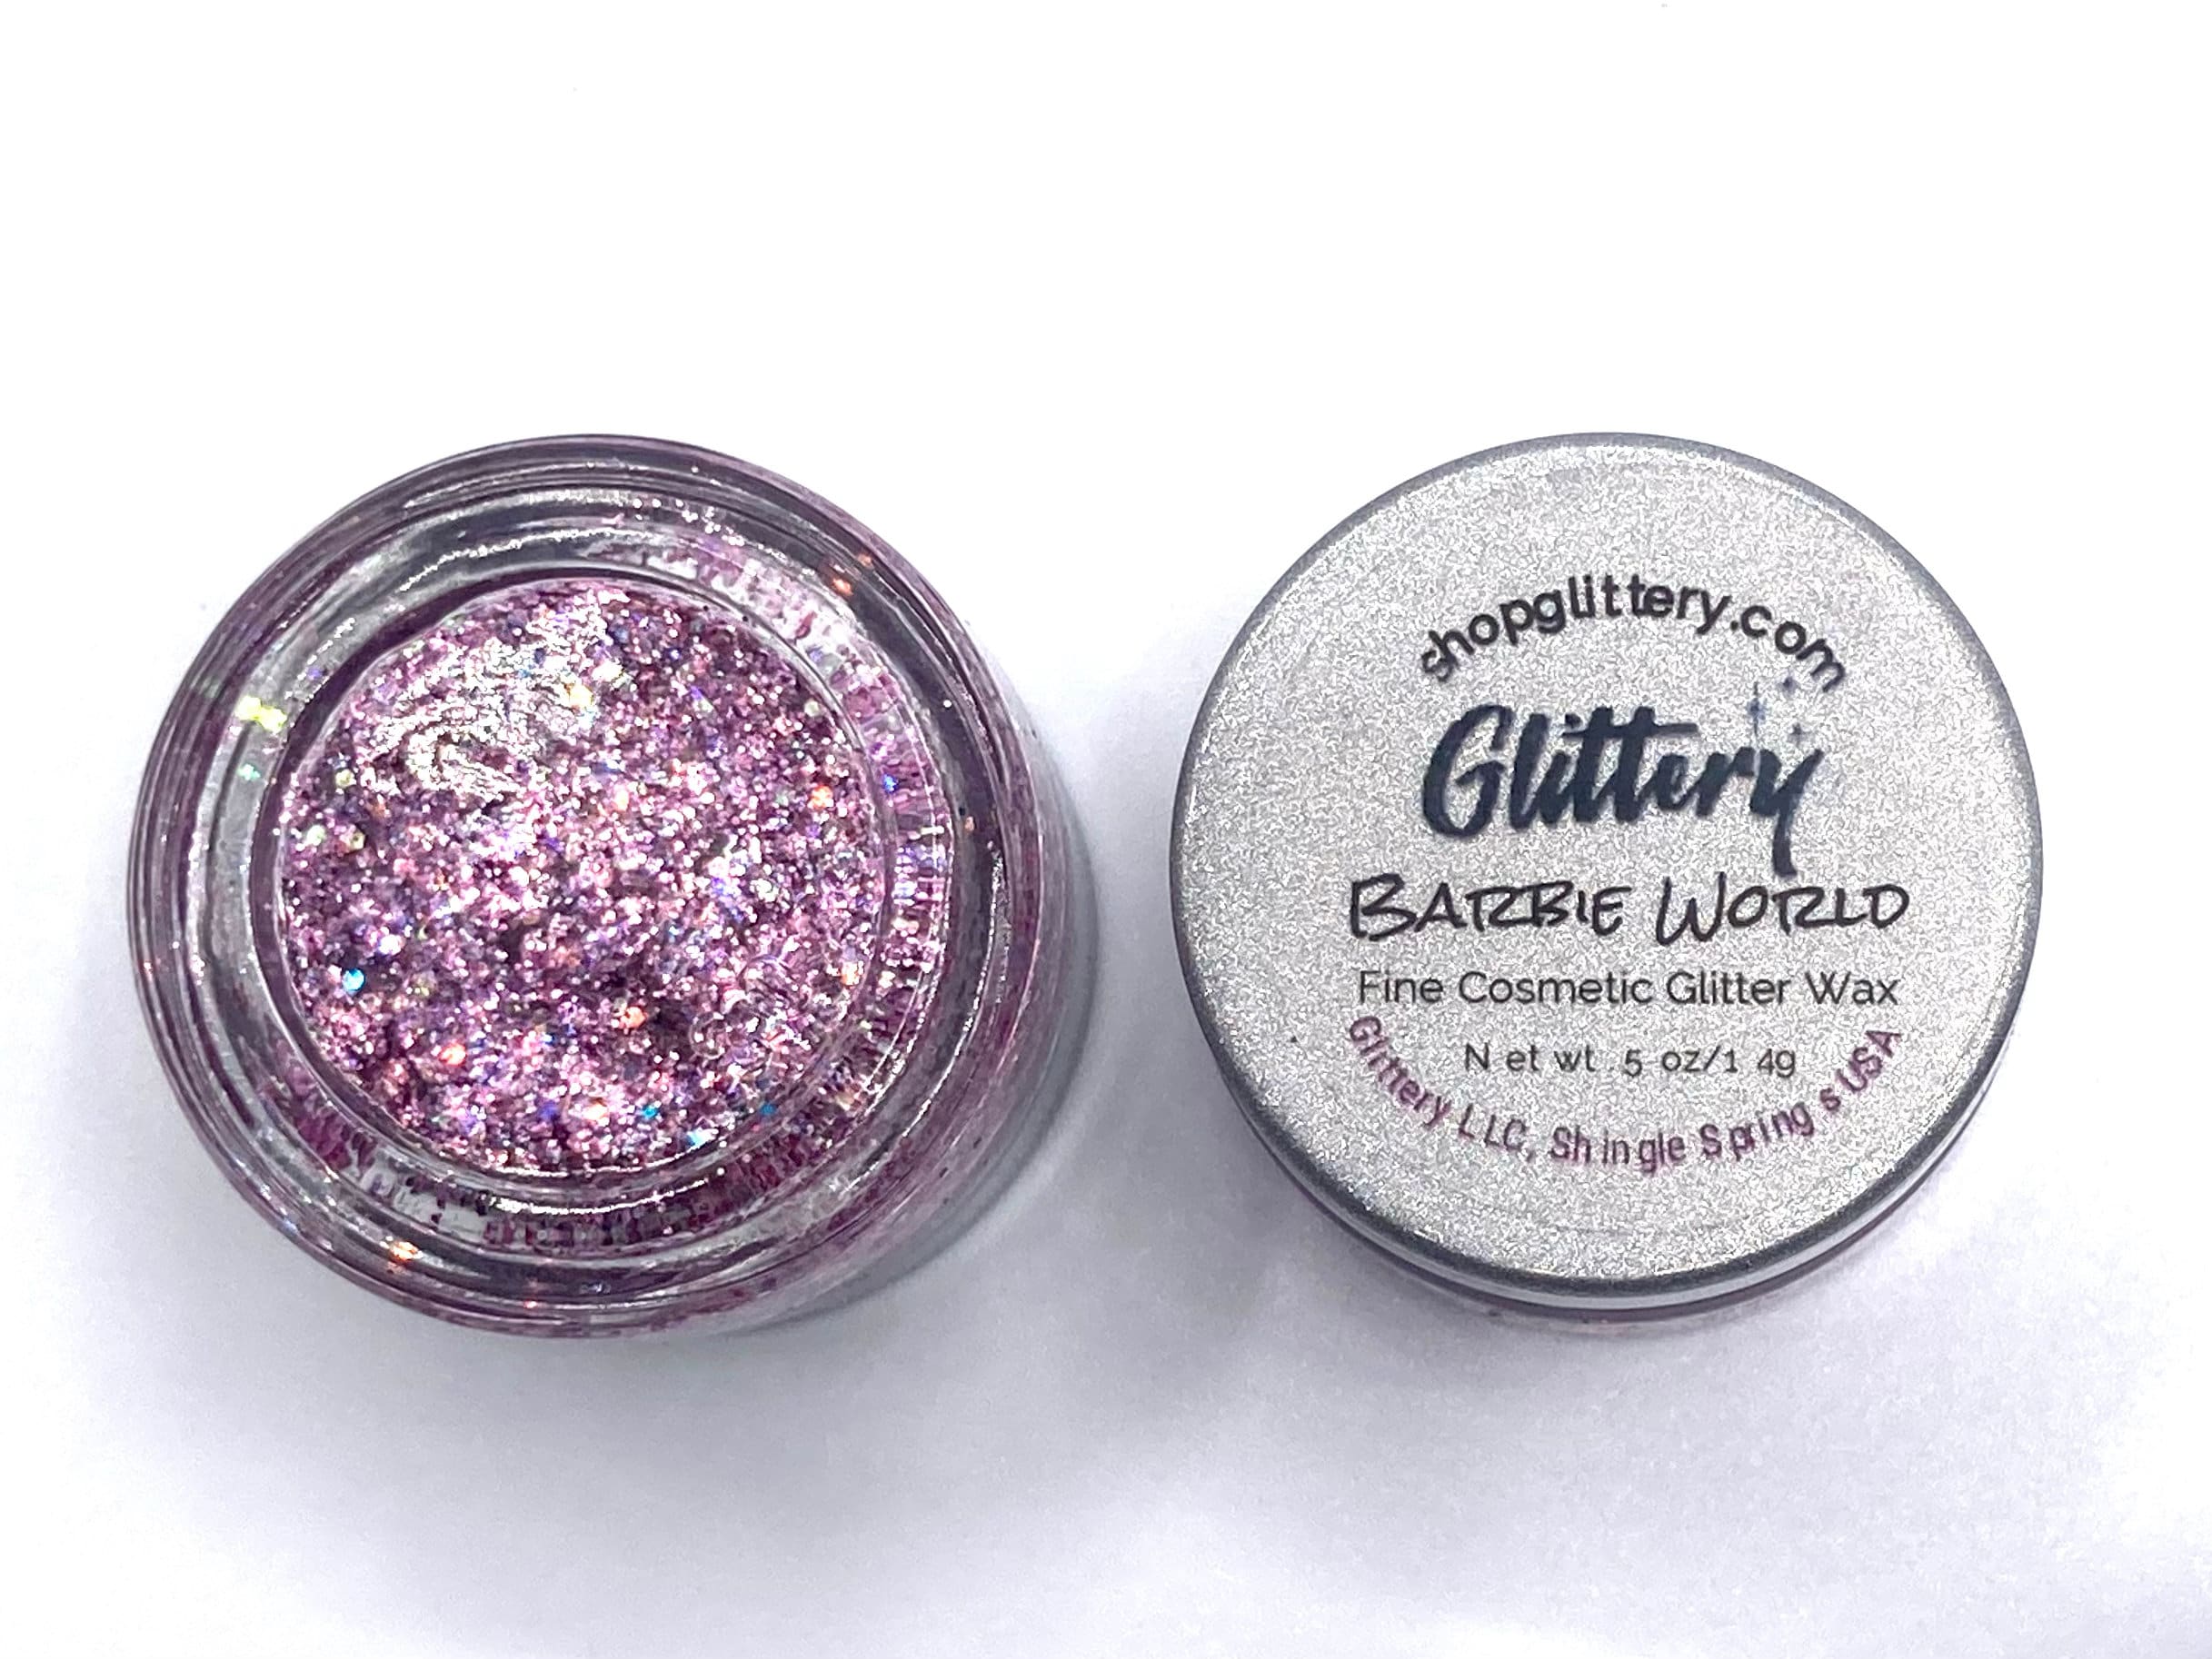 Pink Lightning Bulk Glitter Mix Cosmetic Grade Glitter .008 Ultrafine  Glitter for Lip Gloss, Tumbler Glitter, Resin, Eye, Face 